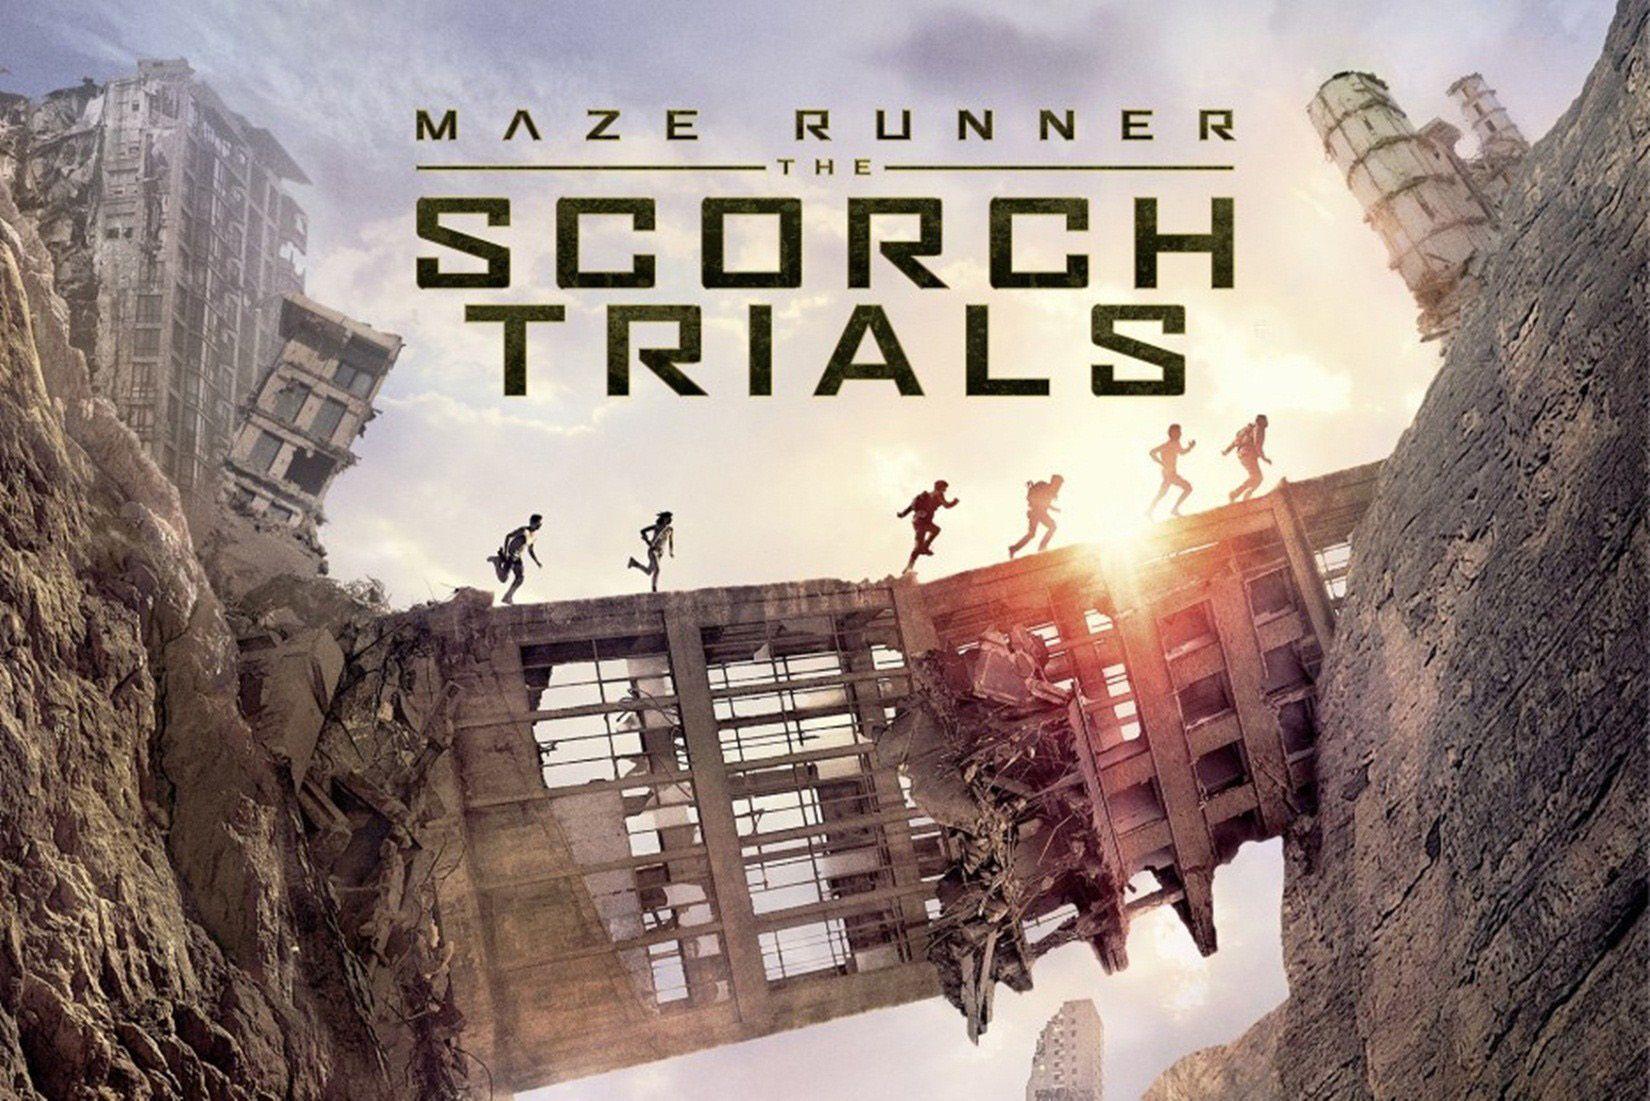 Maze Runner The Scorch Trials wallpaper High Definition